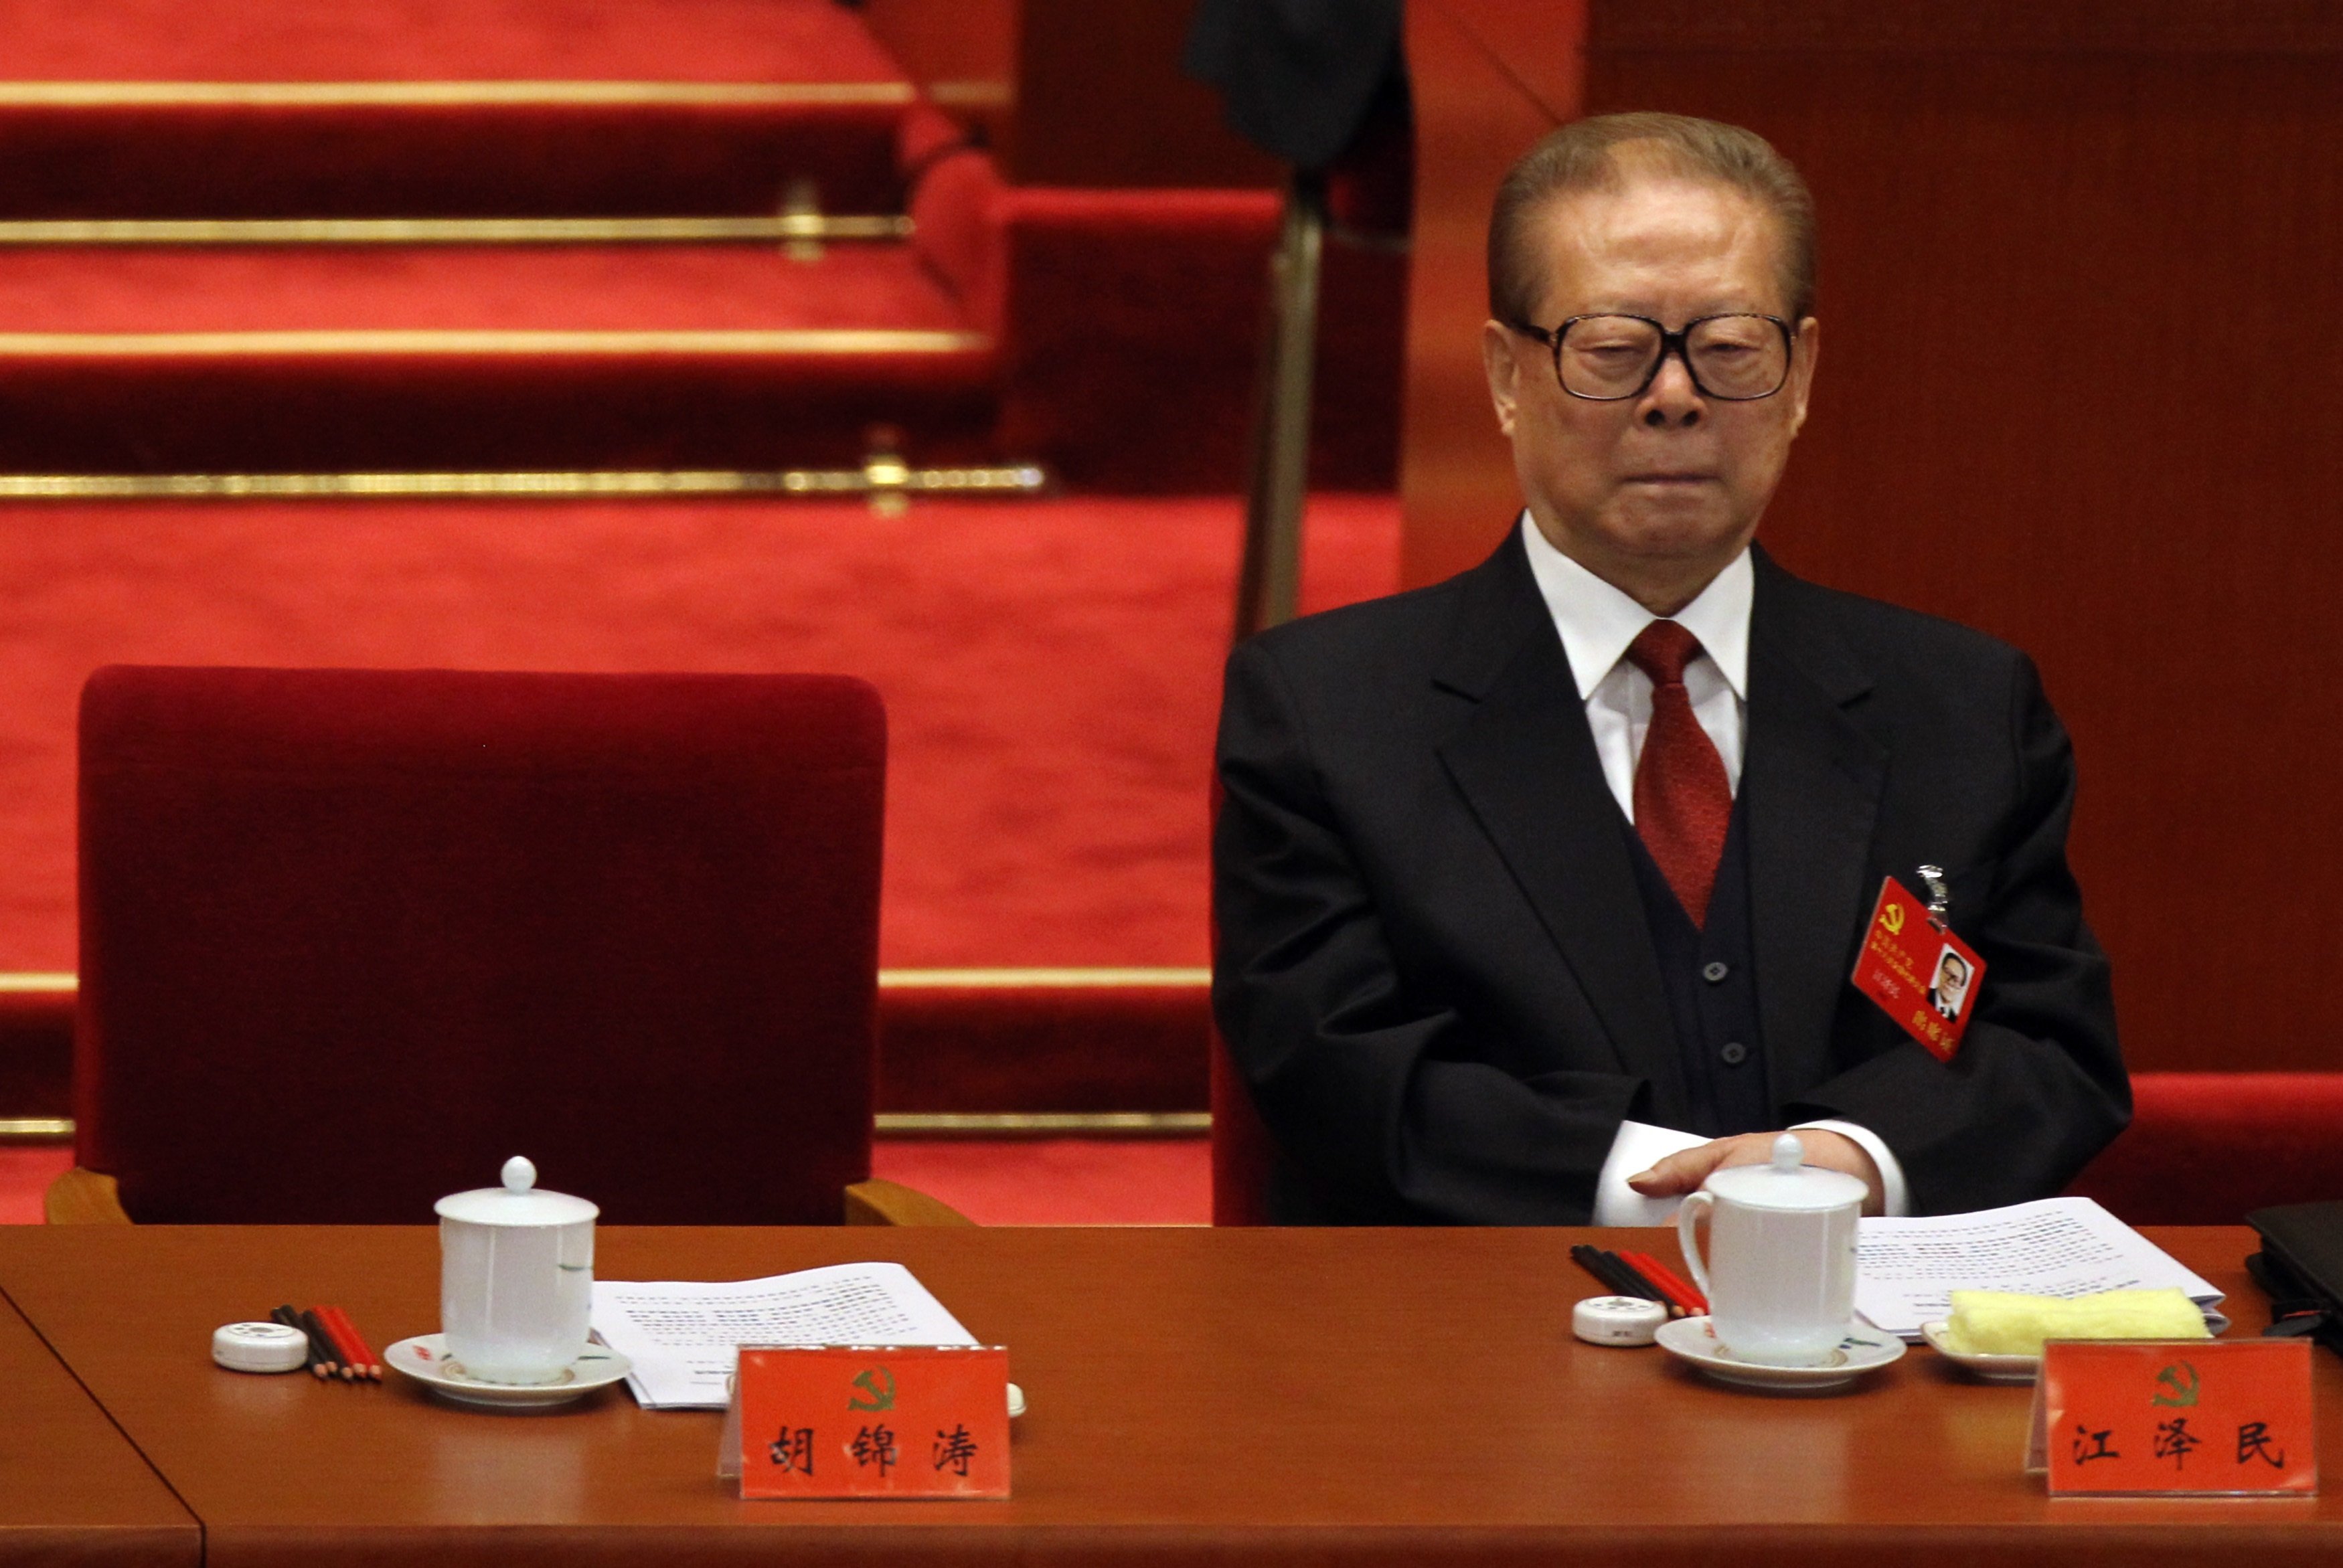 Muere el expresidente chino Jiang Zemin a los 96 años